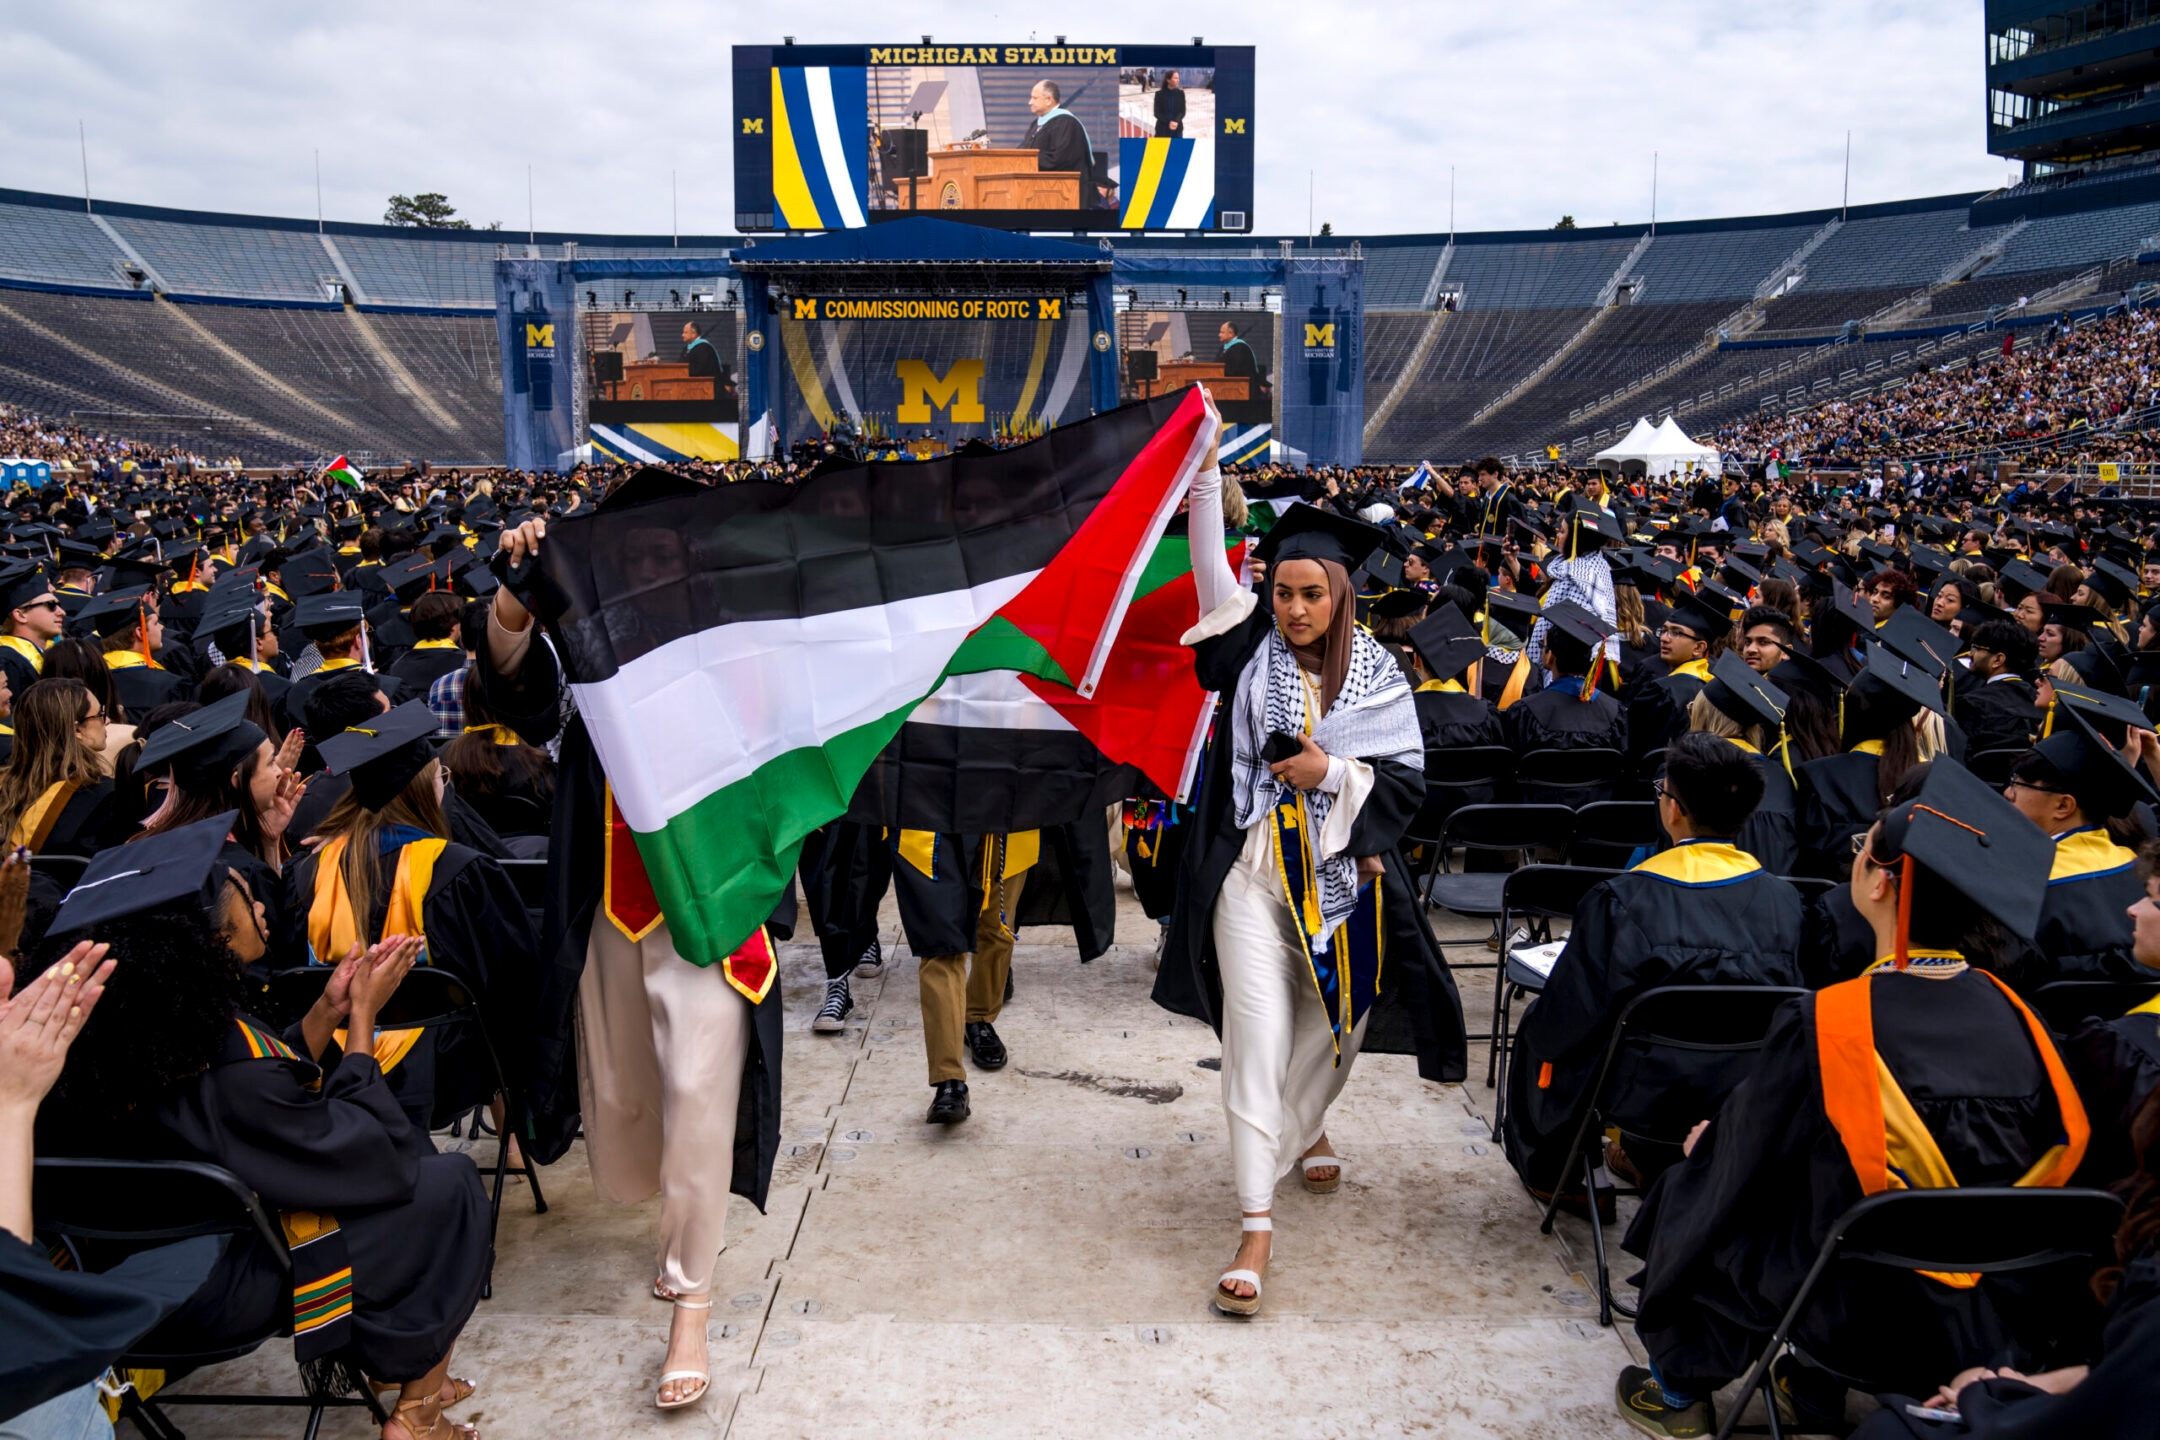 ממישיגן ועד בוסטון, מפגינים פרו-פלסטינים מתעקשים בסיום הלימודים בקולג'